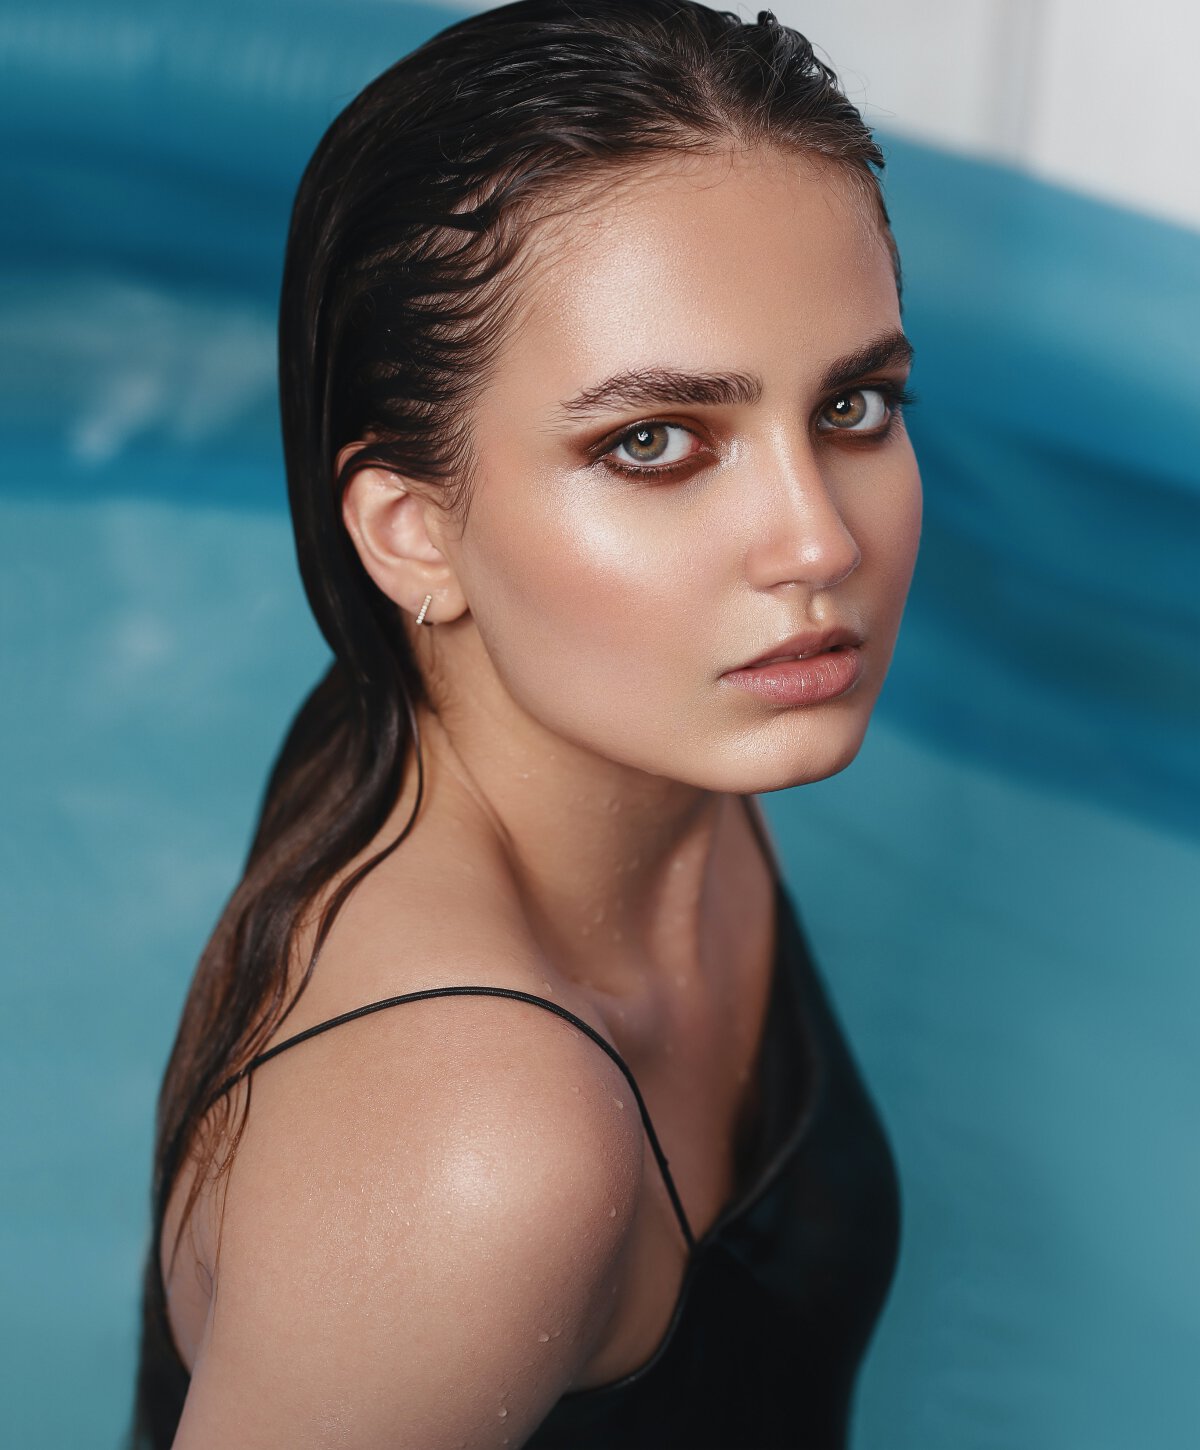 Carolina Botox model in pool